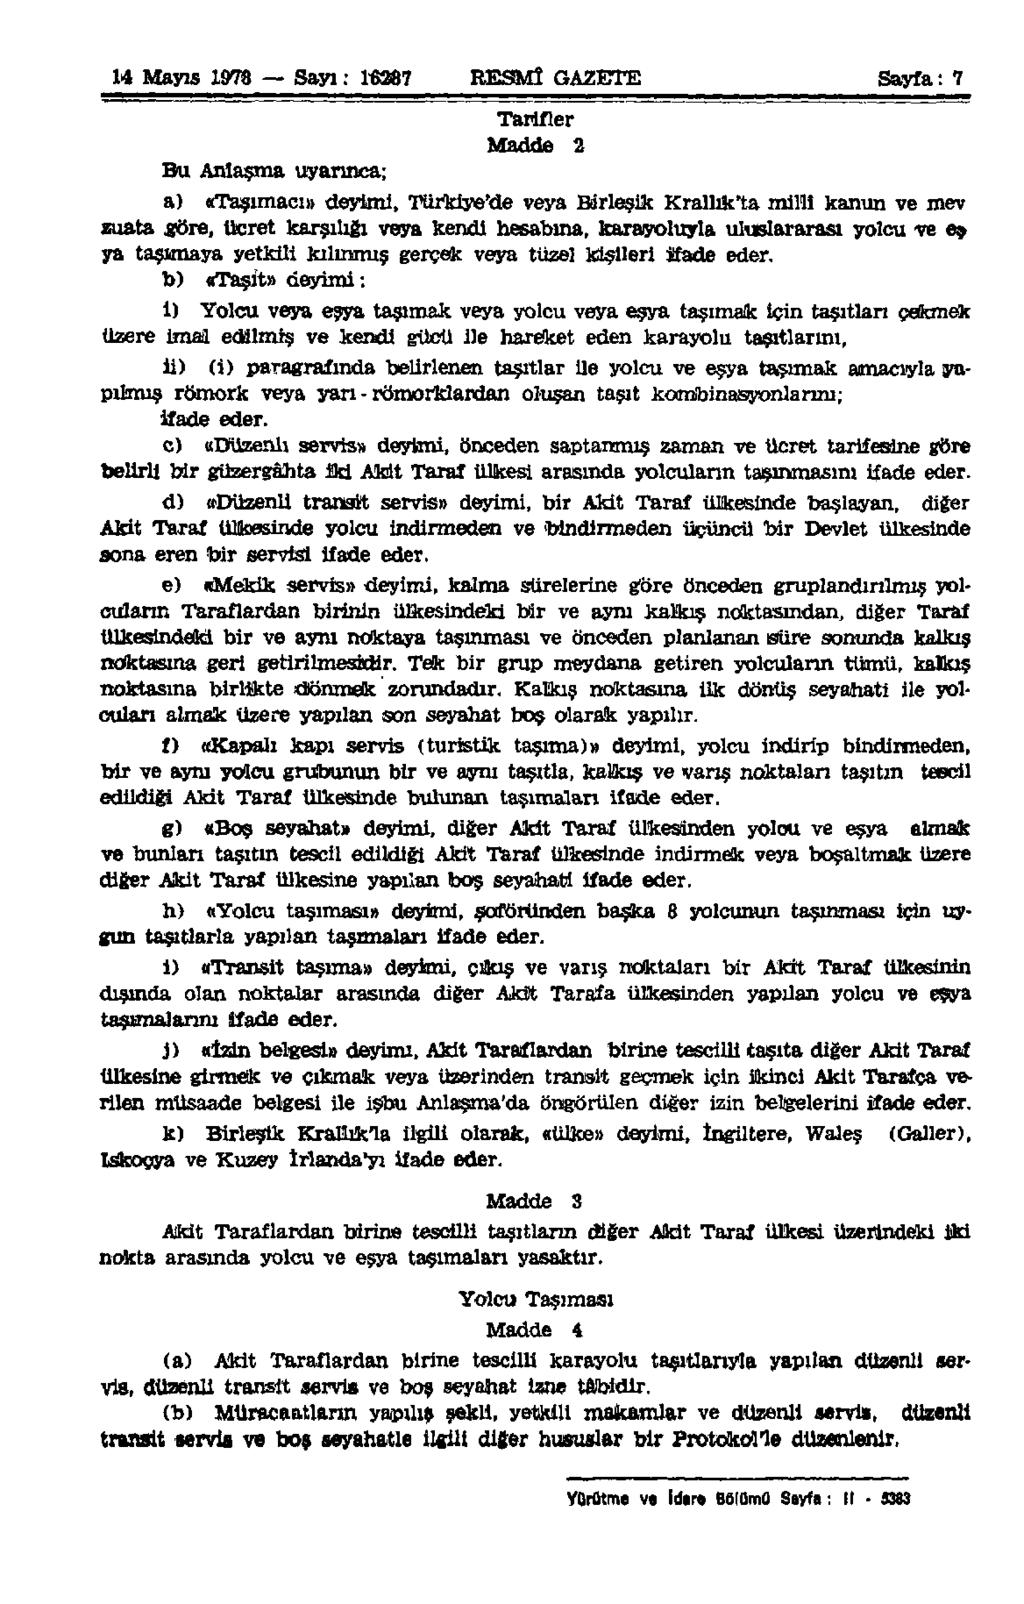 14 Mayıs 1978 Sayı: 16287 RESMÎ GAZETE Sayfa: 7 Bu Anlaşma uyarınca; Tarifler Madde 2 a) «Taşımacı» deyimi, Türkiye'de veya Birleşik Krallık'ta millî kanun ve mev zuata göre, ücret karşılığı veya